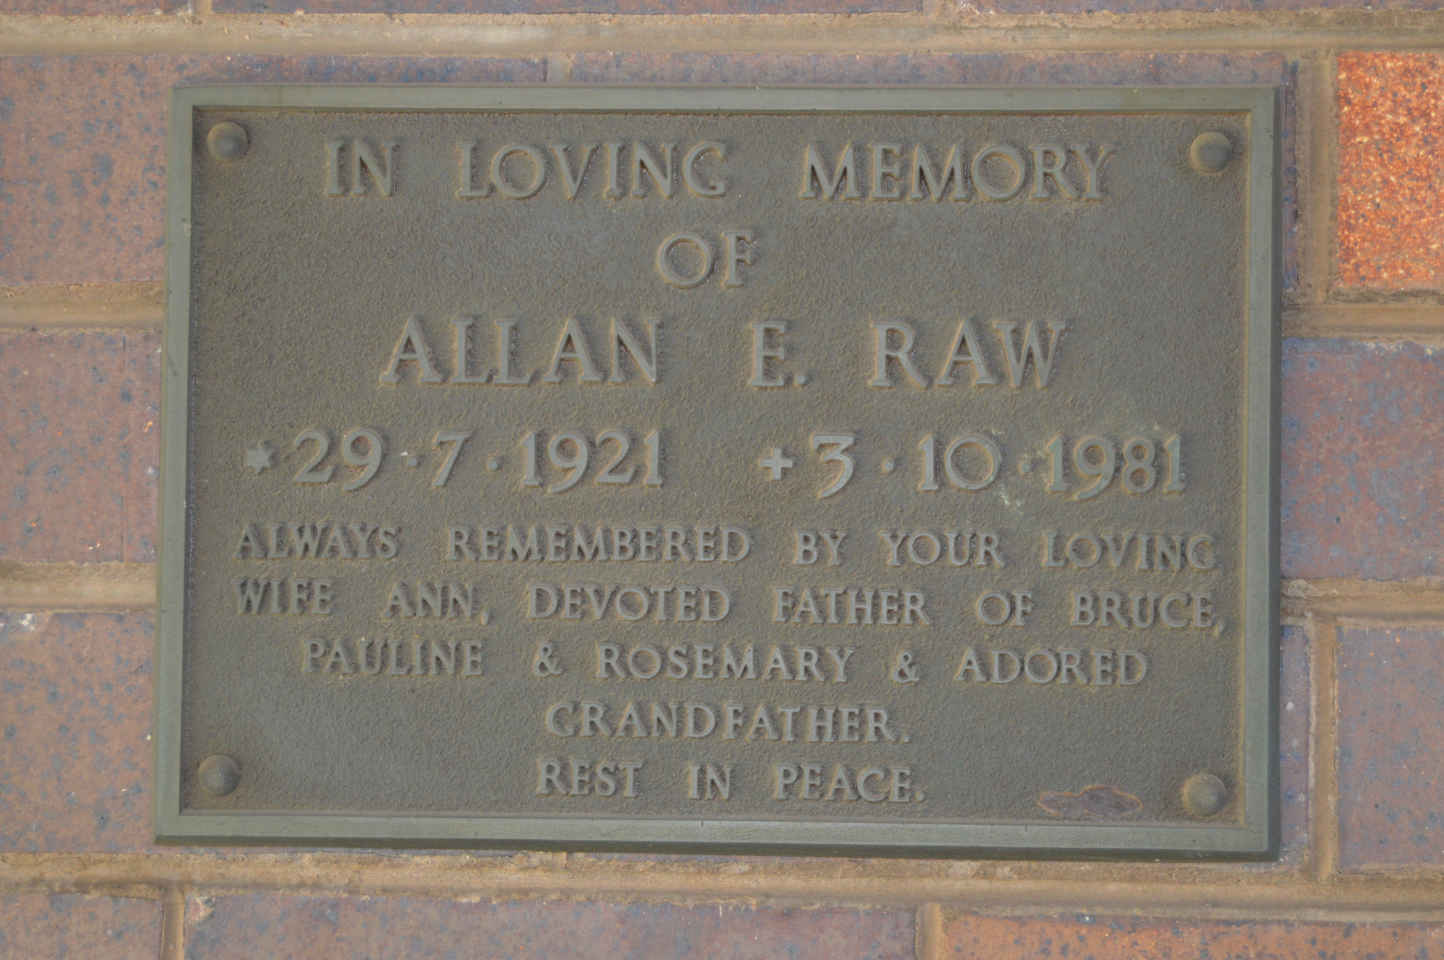 RAW Allan E. 1921-1981